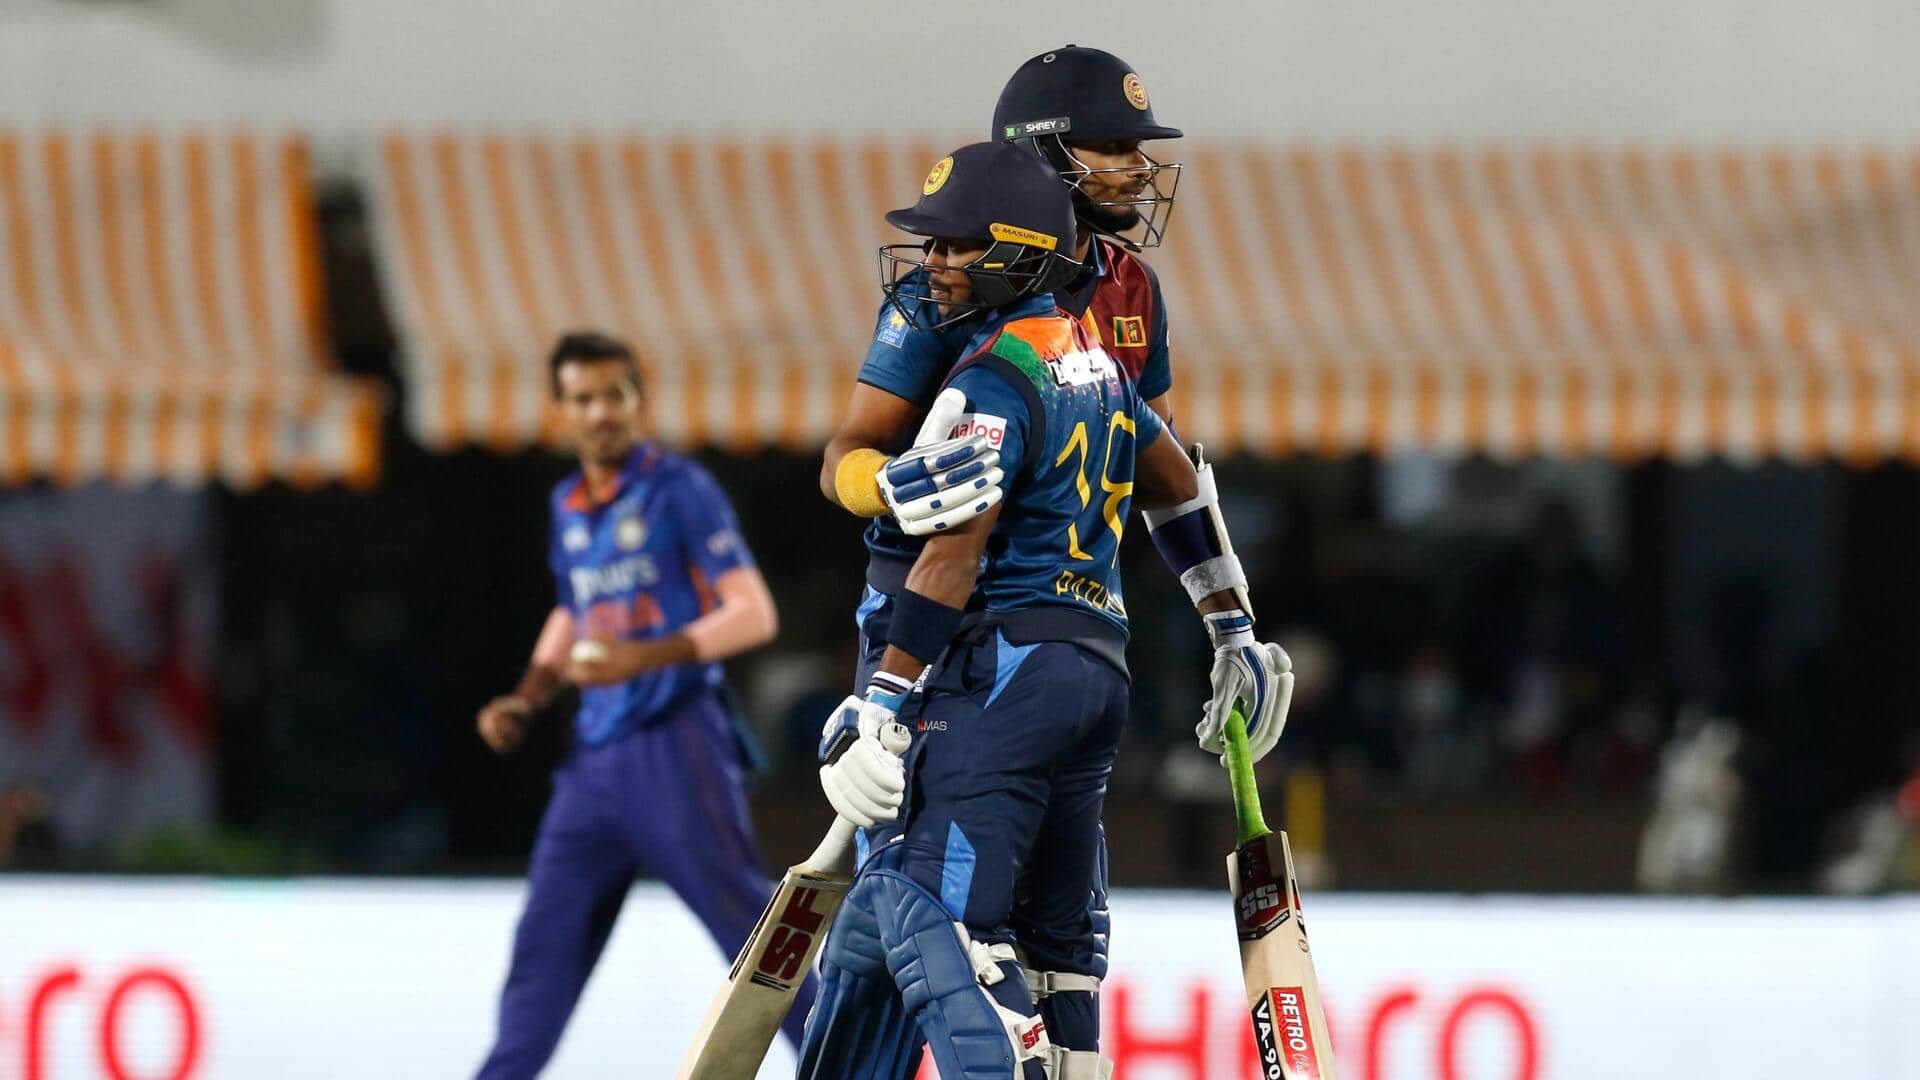 वनडे विश्व कप में श्रीलंका के खिलाफ कैसा रहा है भारतीय टीम का प्रदर्शन? जानिए आंकड़े